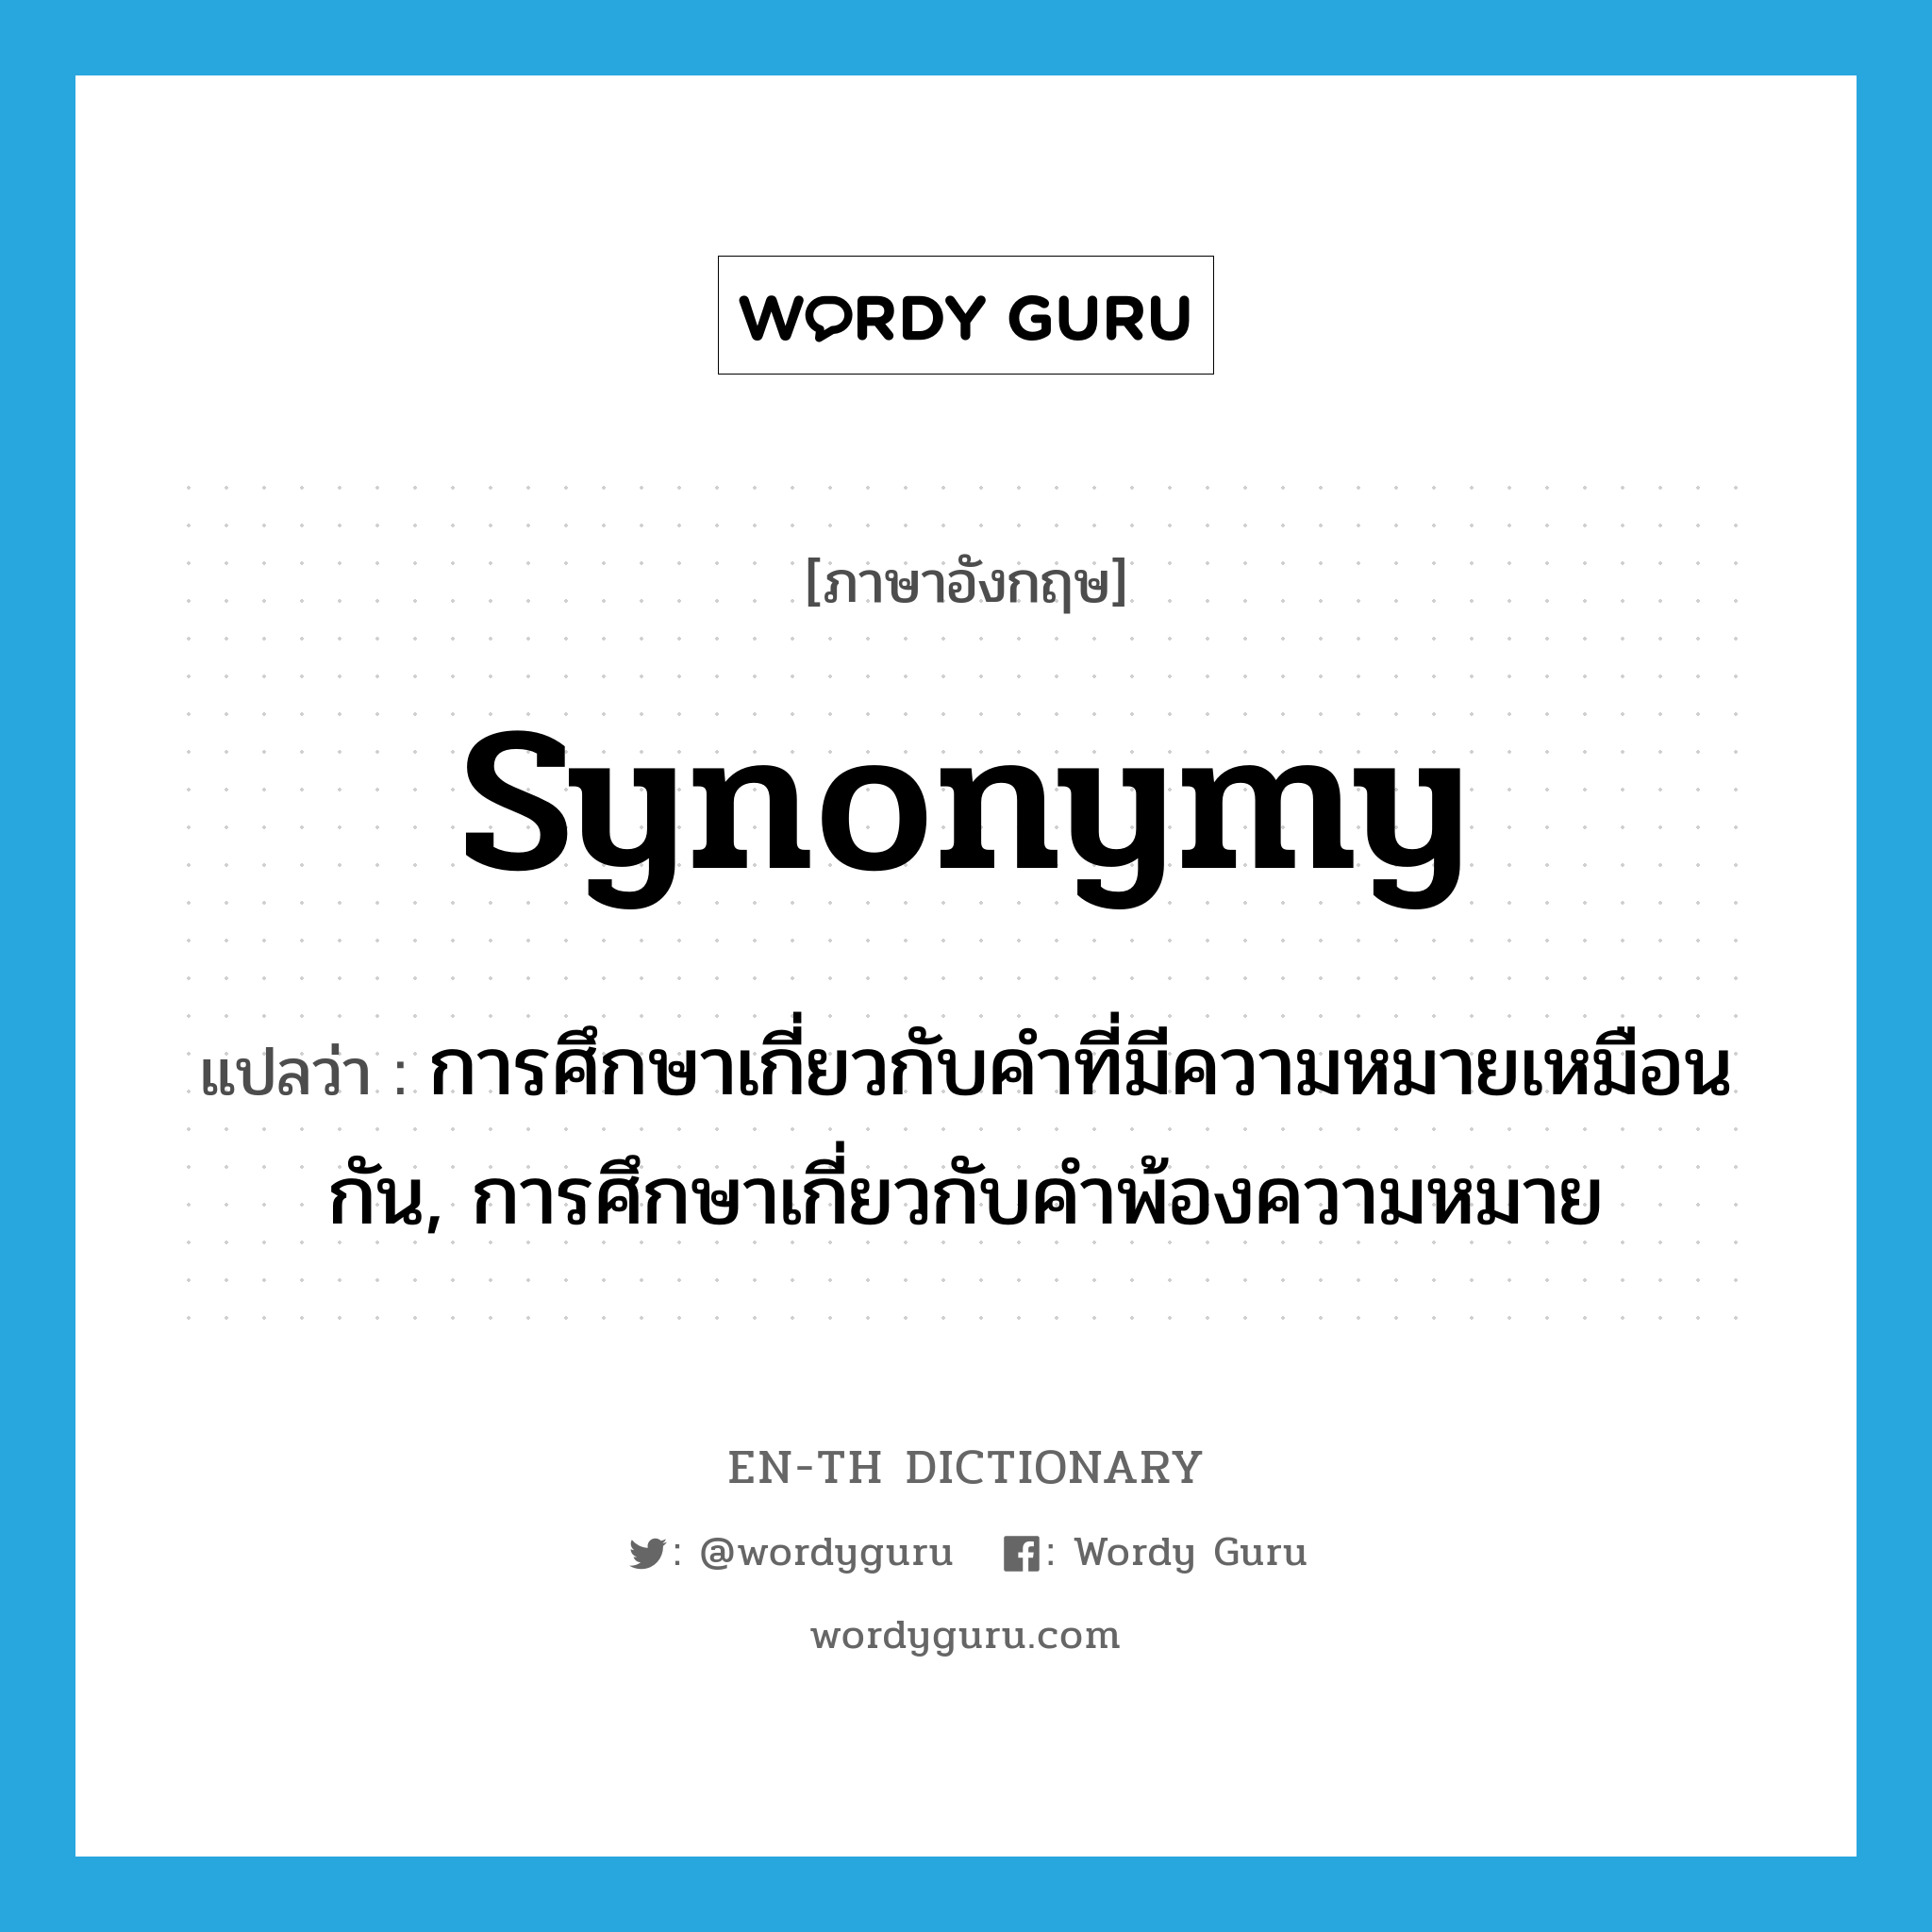 synonymy แปลว่า?, คำศัพท์ภาษาอังกฤษ synonymy แปลว่า การศึกษาเกี่ยวกับคำที่มีความหมายเหมือนกัน, การศึกษาเกี่ยวกับคำพ้องความหมาย ประเภท N หมวด N